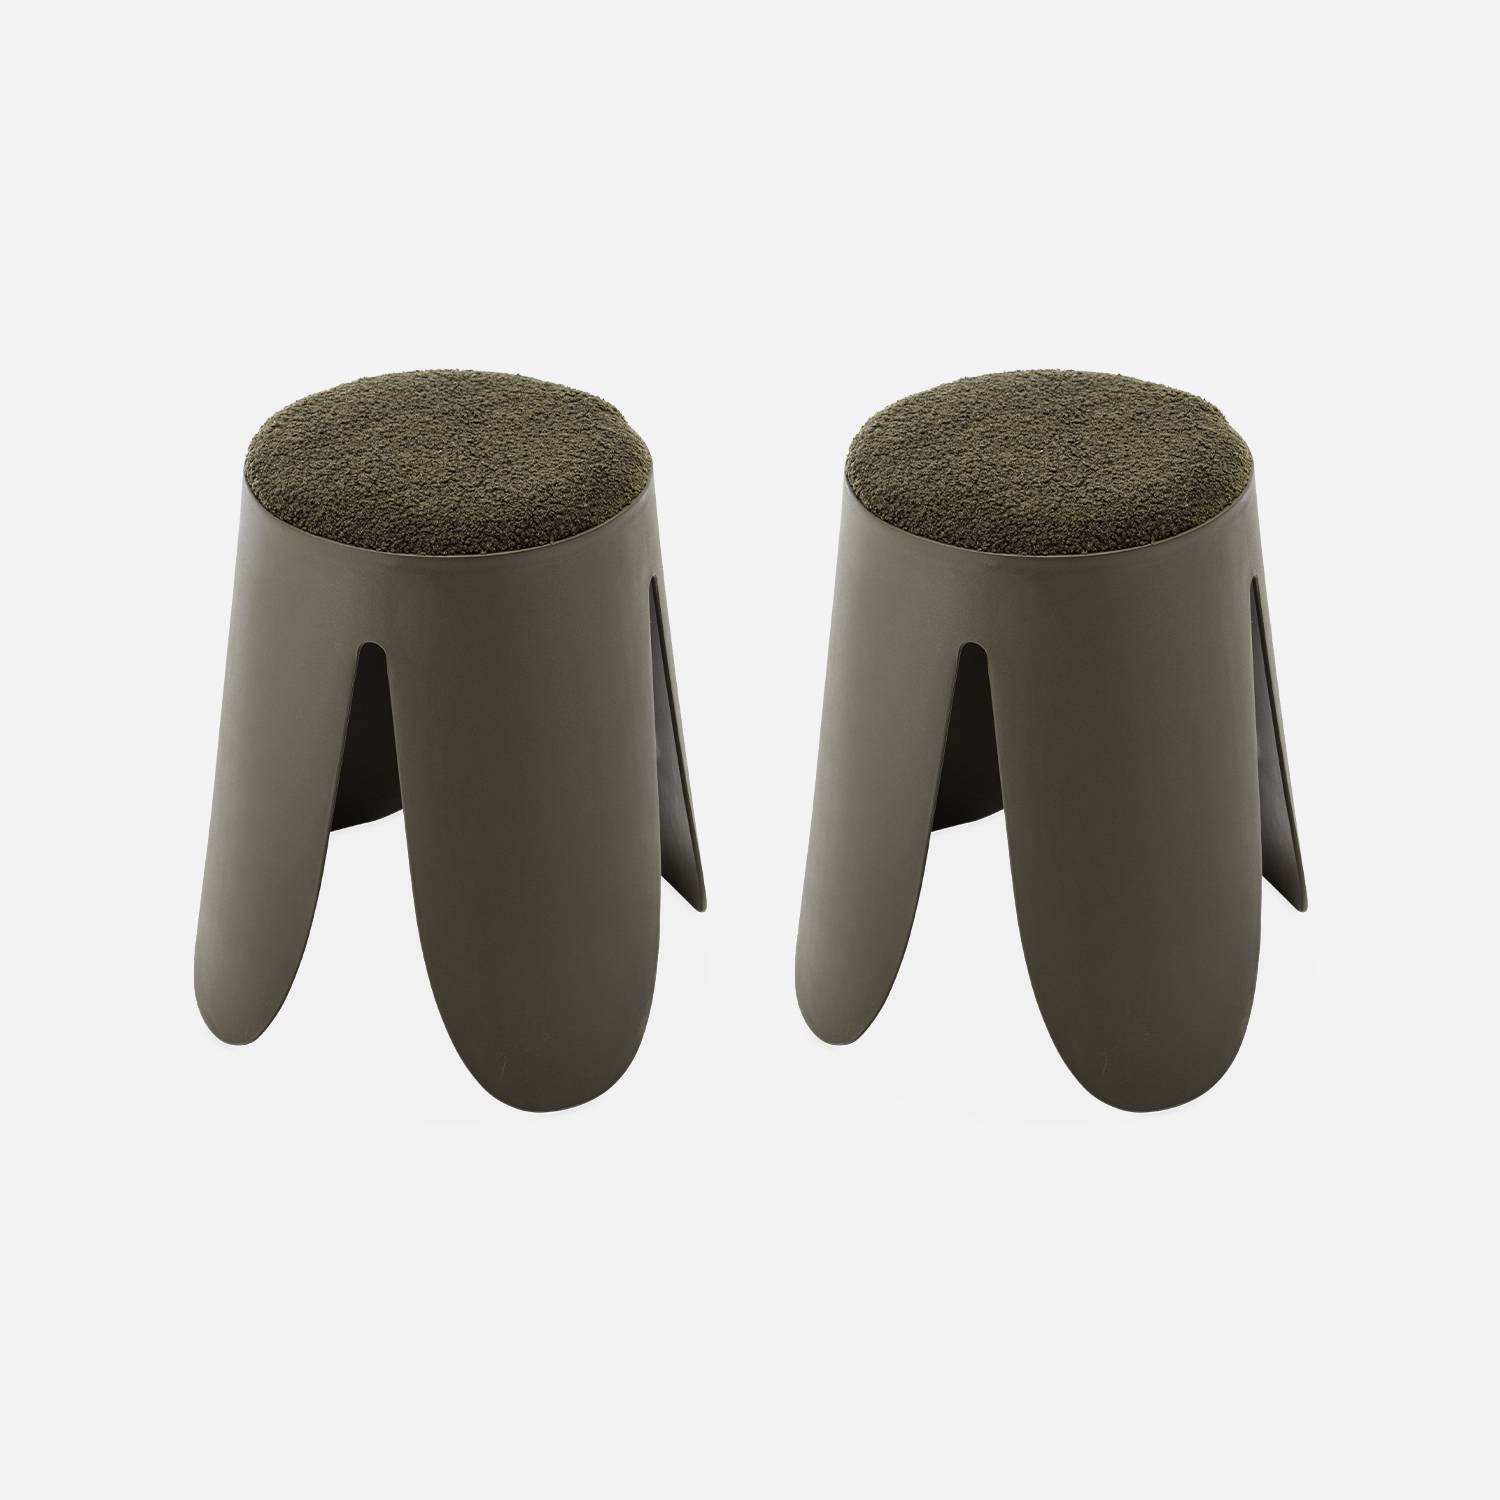  Conjunto de 2 taburetes apilables, asiento texturado | sweeek